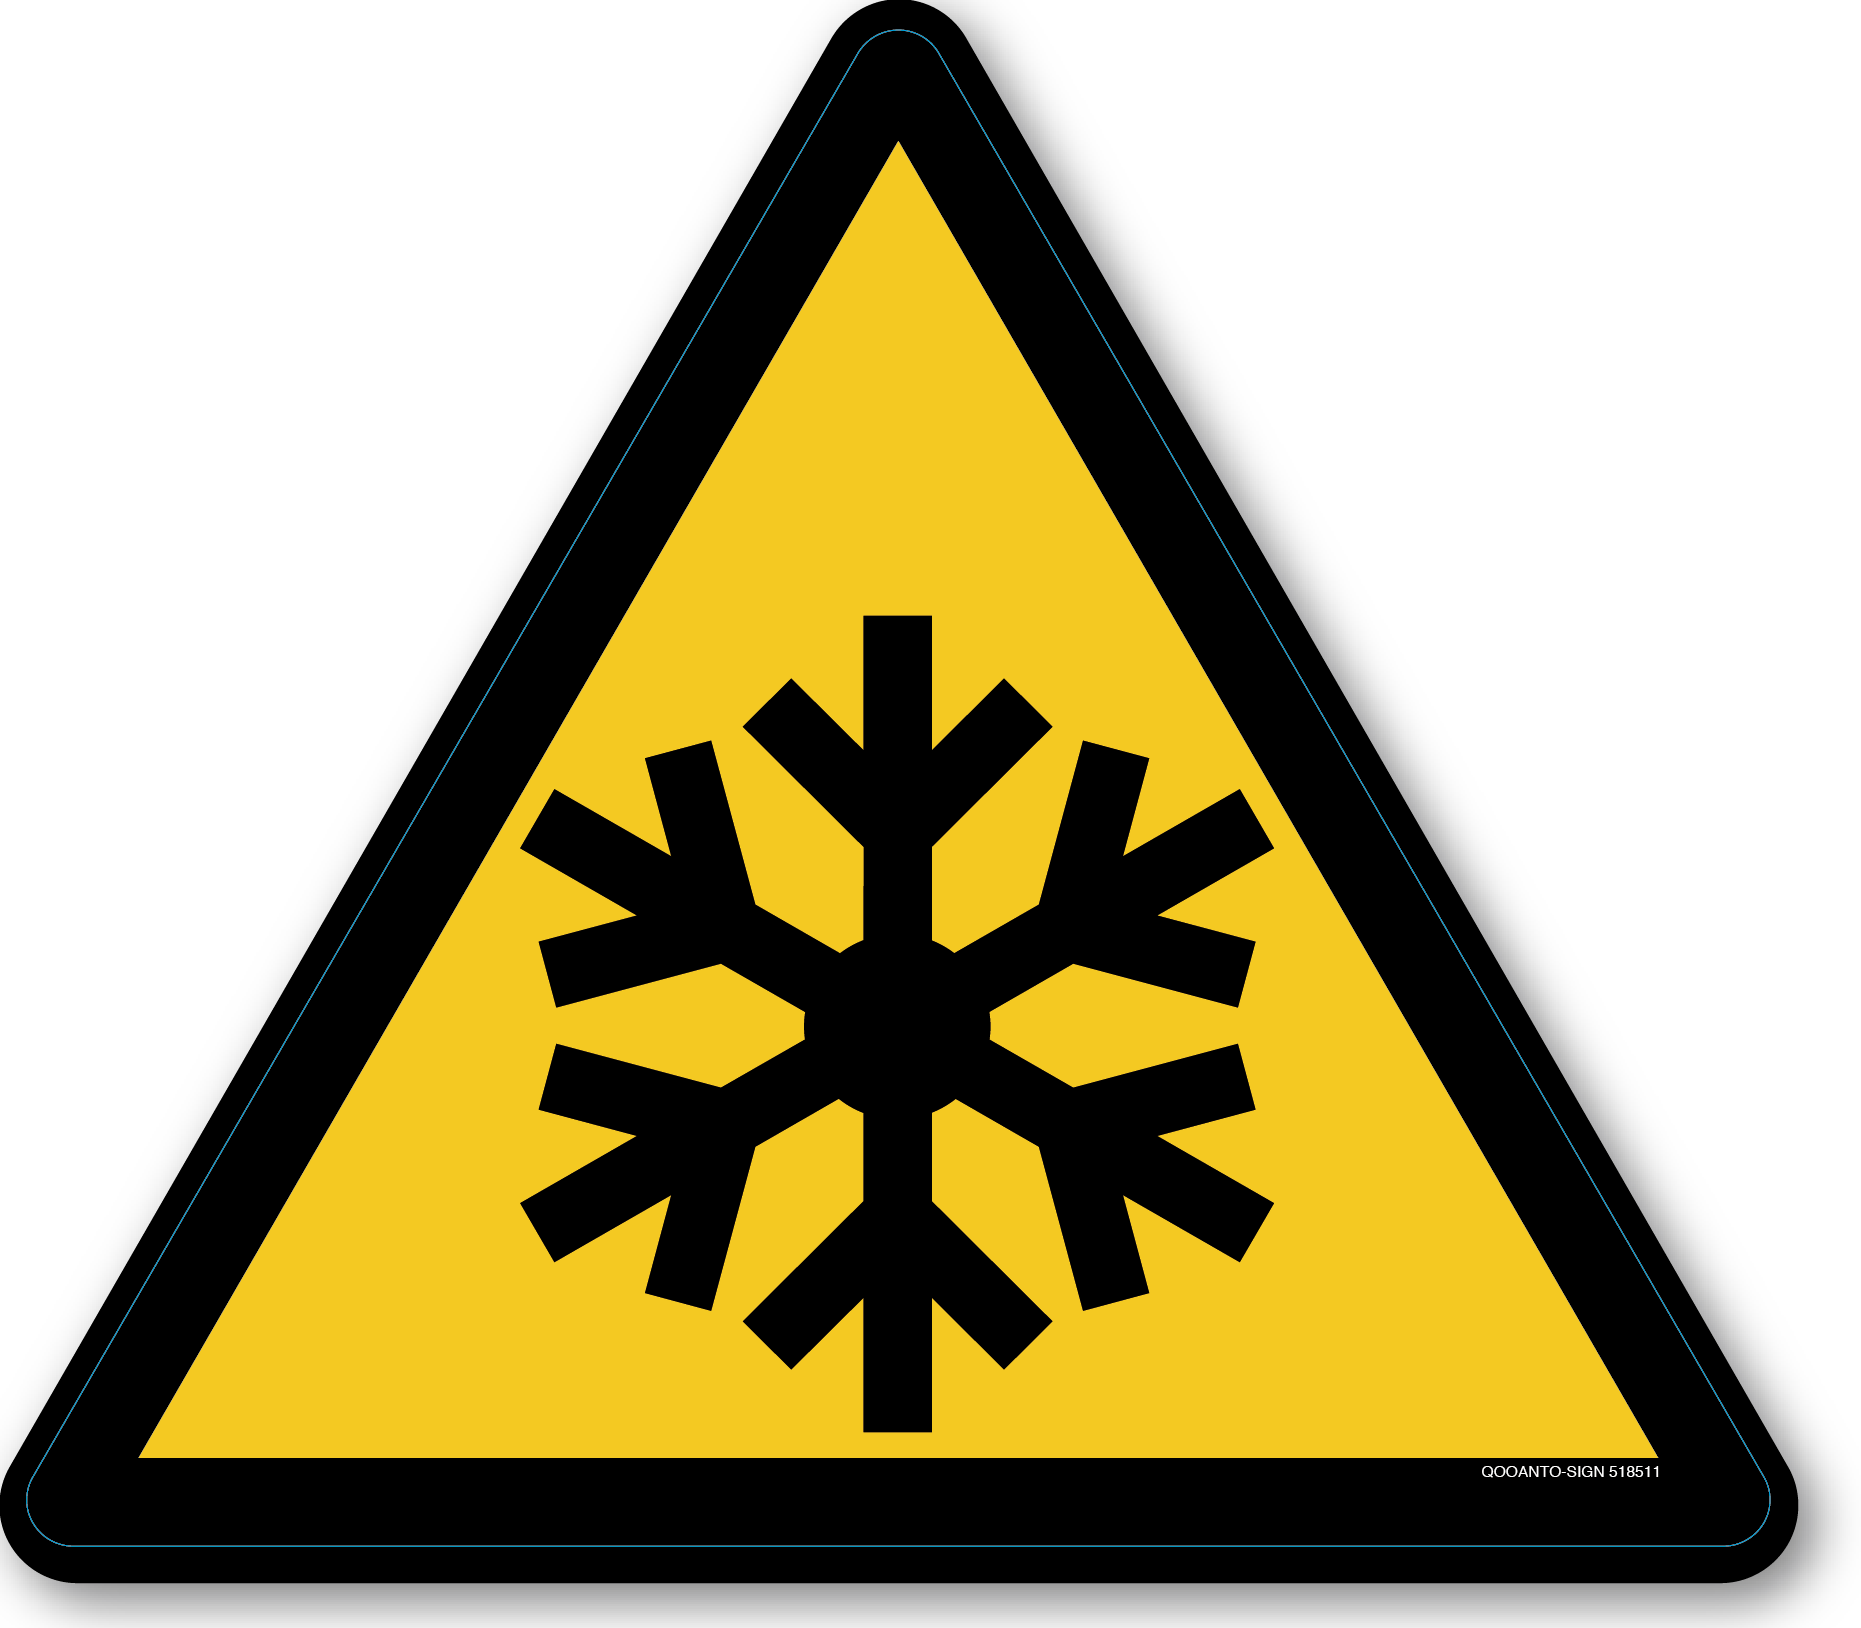 Warnung vor niedriger Temperatur Kälte, Schild oder Aufkleber